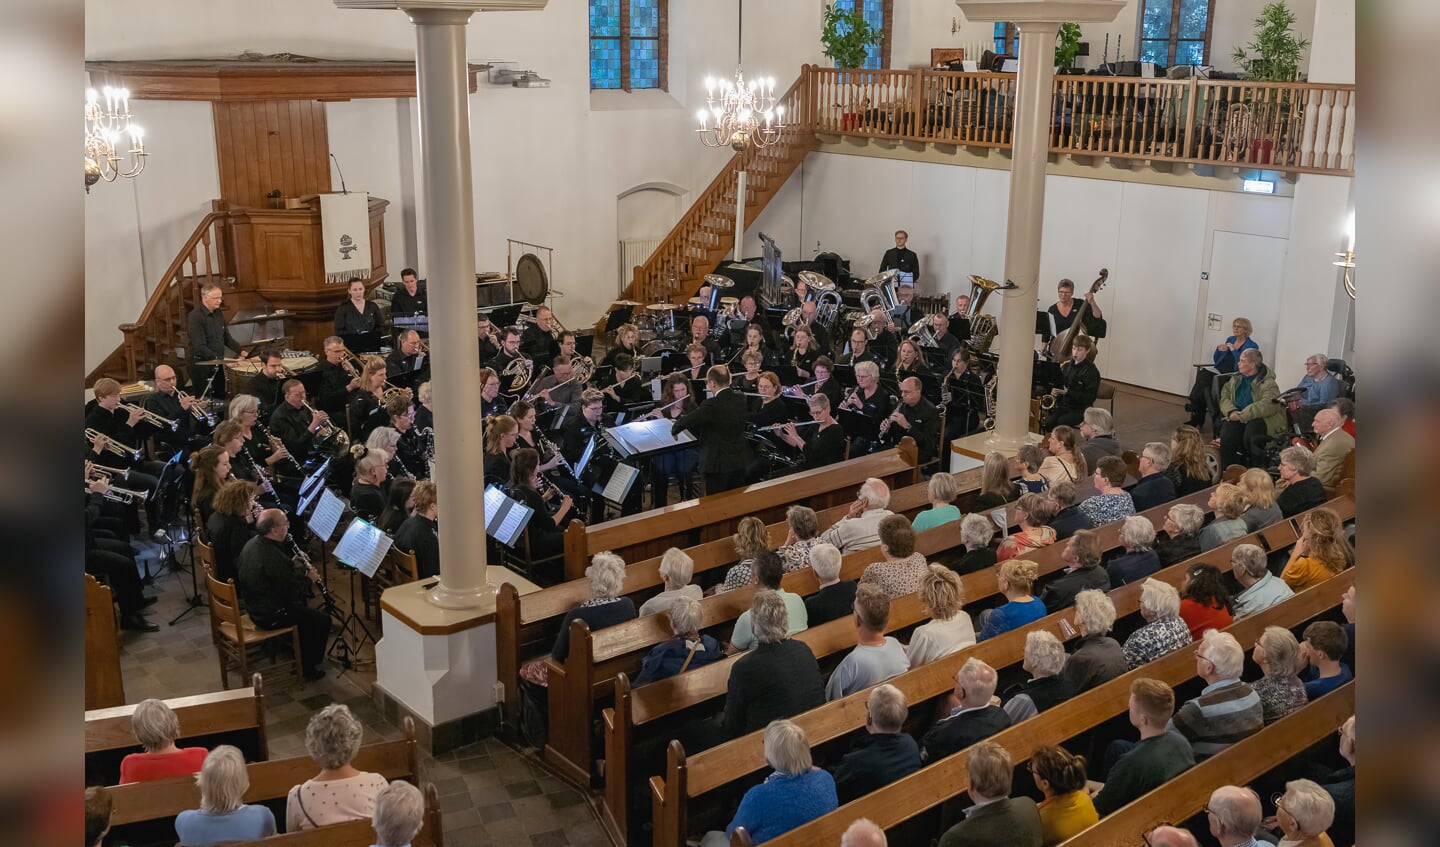 Het Harmonie Orkest Brummen (HOB) in de Pancratiuskerk Brummen. Foto: Ans Kolkman